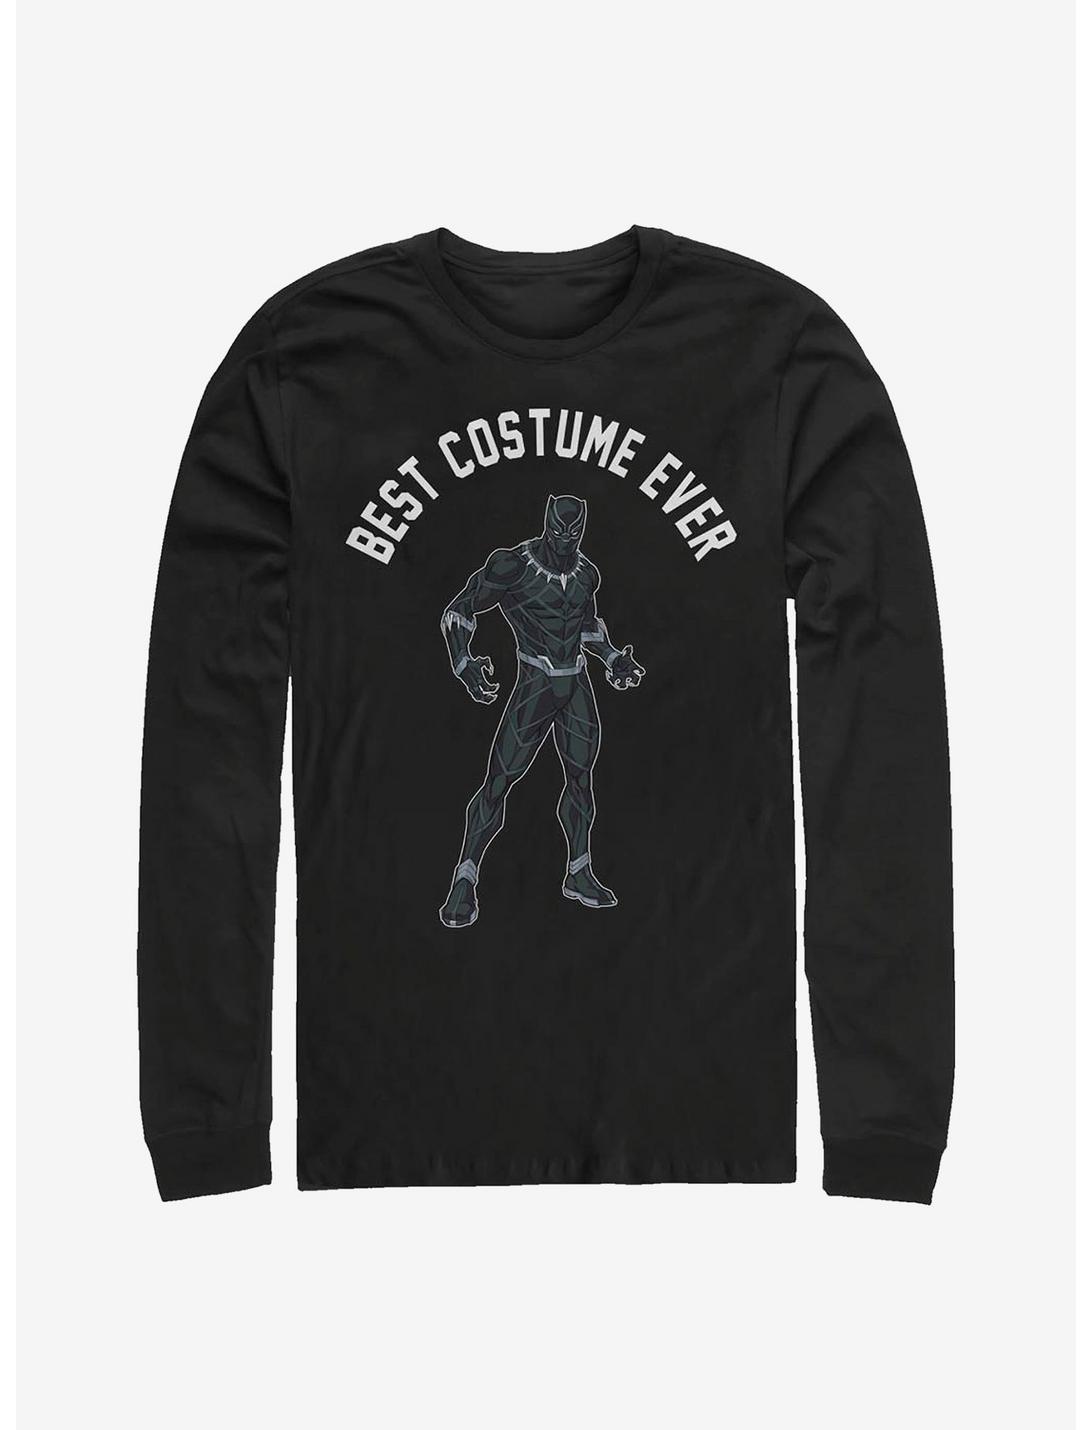 Marvel Black Panther Best Costume Ever Long-Sleeve T-Shirt, BLACK, hi-res